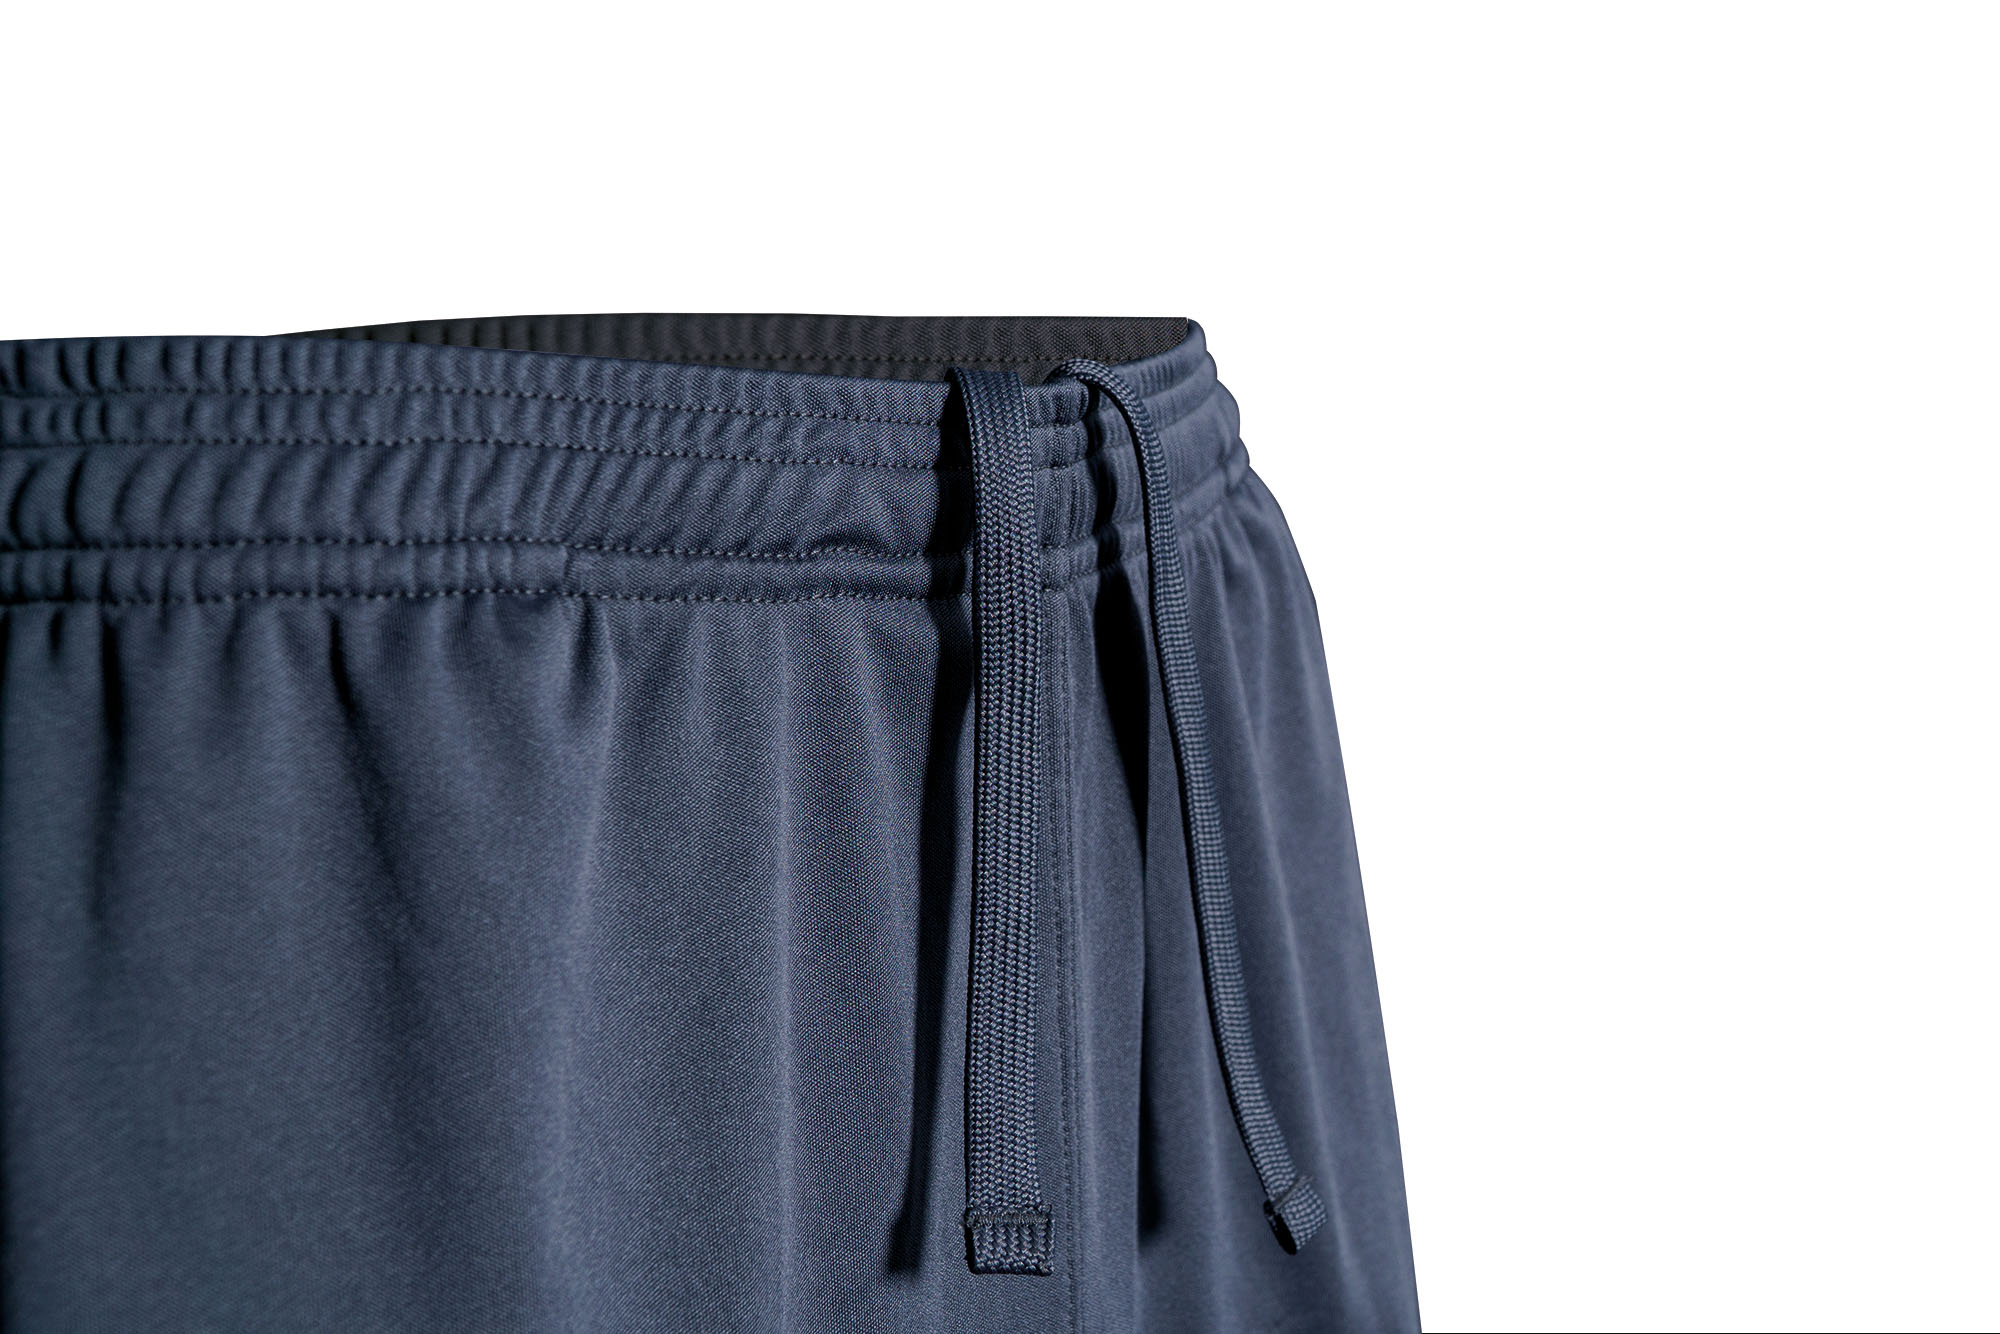 RidgeMonkey APEarel CoolTech Shorts Grey Pantalón